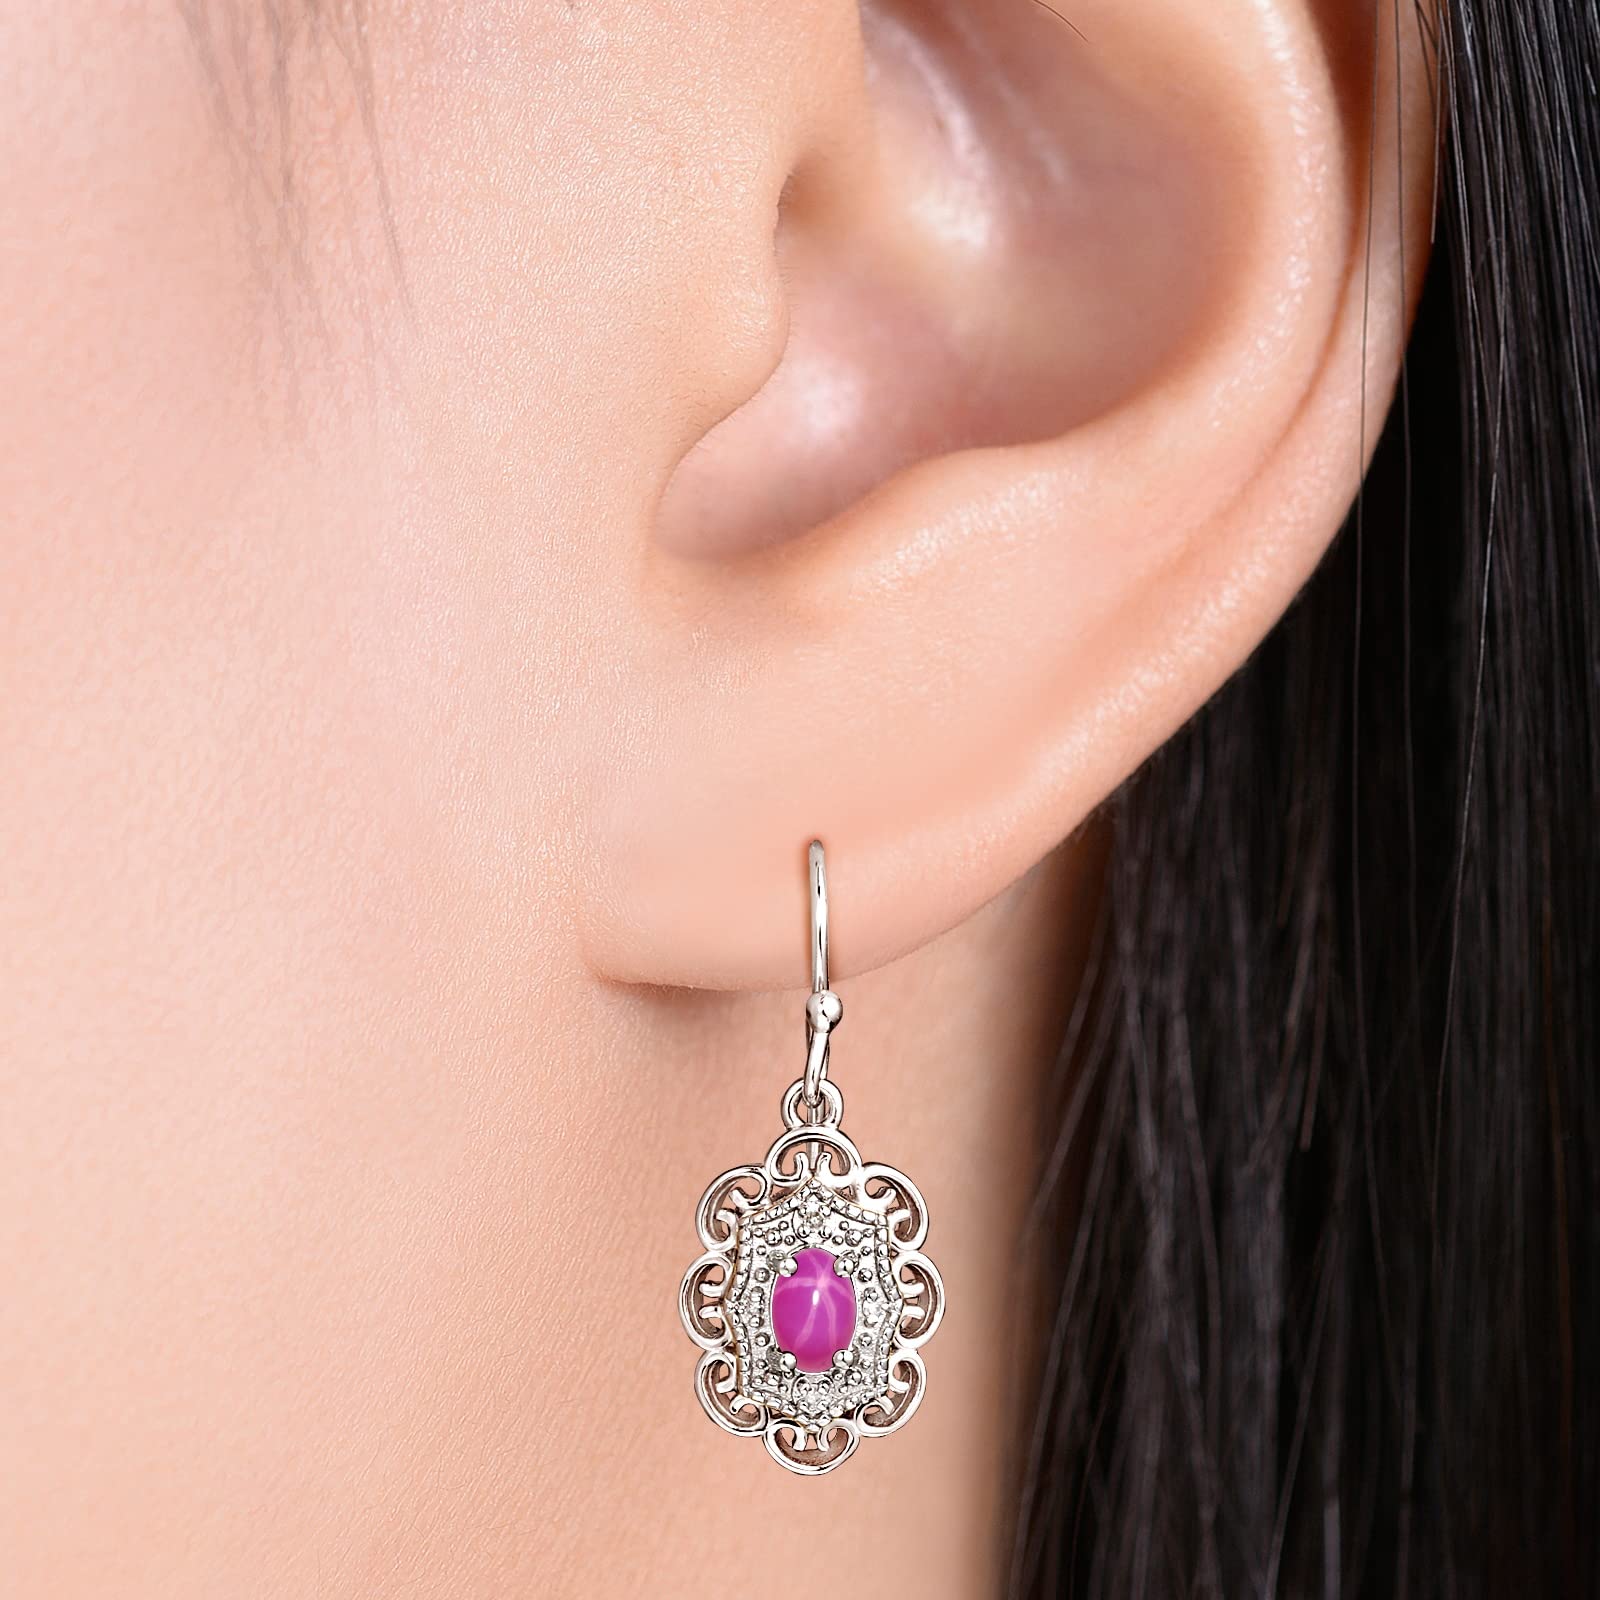 RYLOS Earrings For Women 925 Silver Earrings with Oval Shape Gemstone & Genuine Diamonds Dangling Earrings 6X4MM Birthstone Earring Color Stone Jewelry For Women Silver Earrings